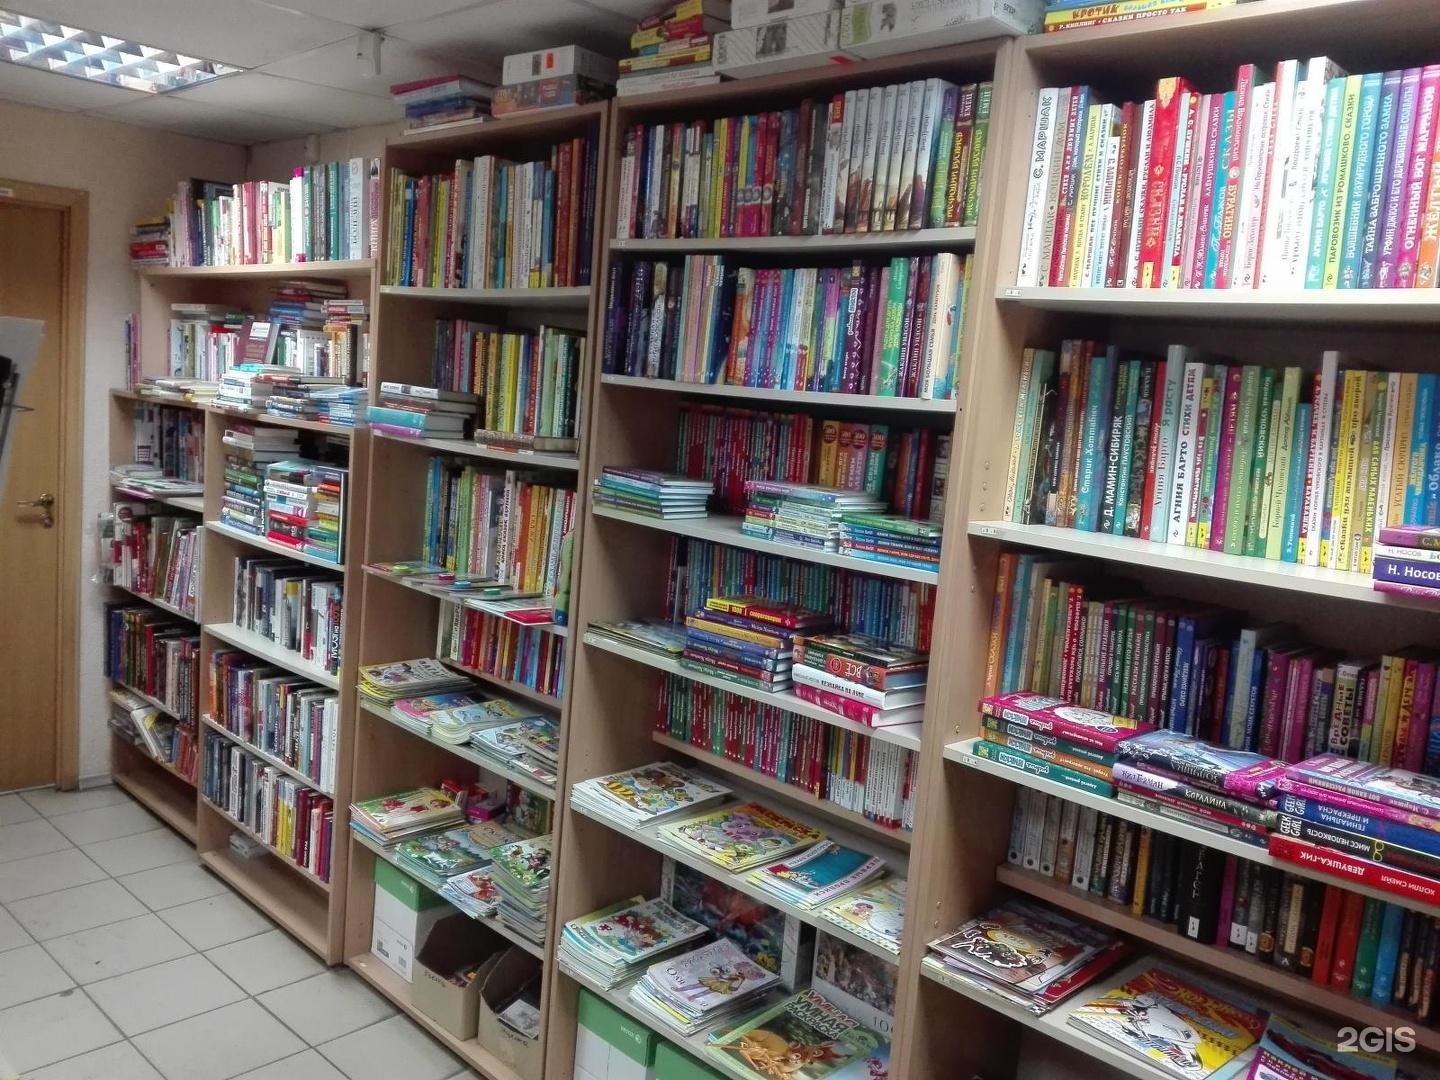 Где Купить Учебники В Красноярске